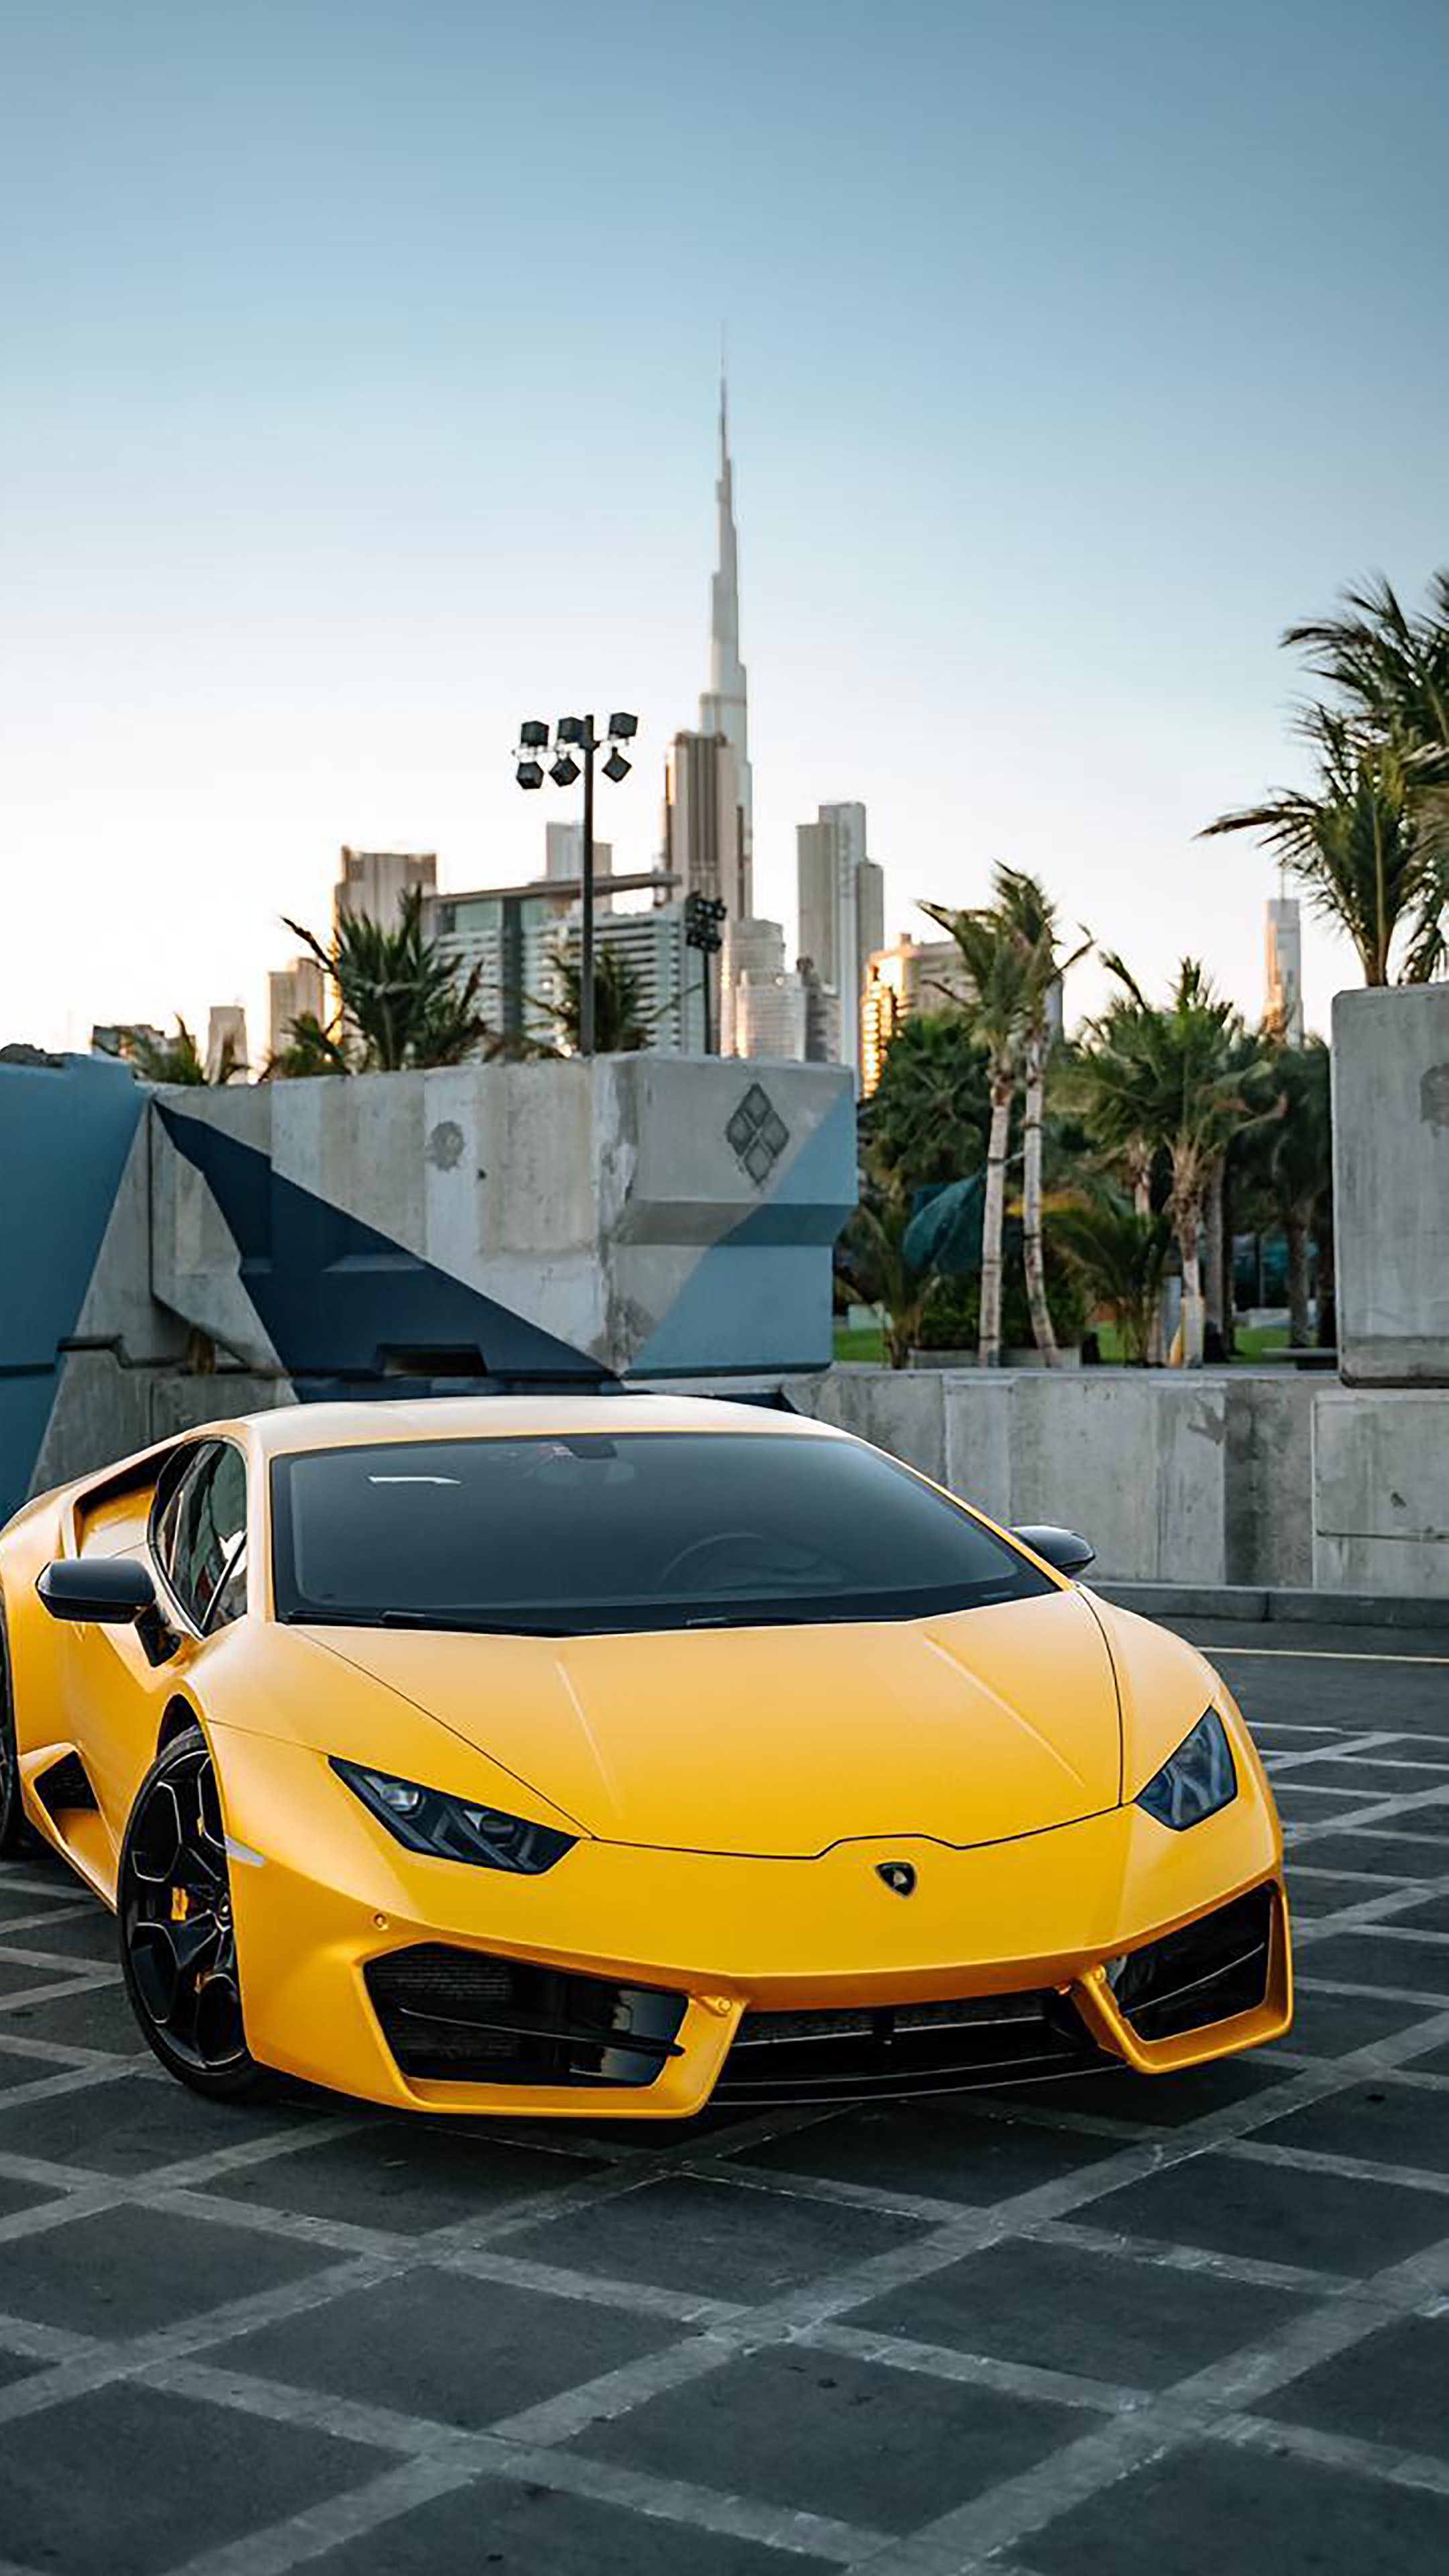 Những chiếc xe Lamborghini luôn là điểm nhấn của mọi triển lãm xe hơi toàn cầu. Với kiểu dáng thể thao, đầy mạnh mẽ cùng chất lượng hoàn hảo, chiếc xe này đã chinh phục được hàng triệu tín đồ tốc độ khó tính nhất. Bạn cũng không thể bỏ qua hình nền Lamborghini - một sản phẩm tuyệt vời để trang trí cho màn hình của bạn. Nhấn play ngay để chiêm ngưỡng những hình ảnh nóng bỏng nhất của siêu xe Lamborghini!